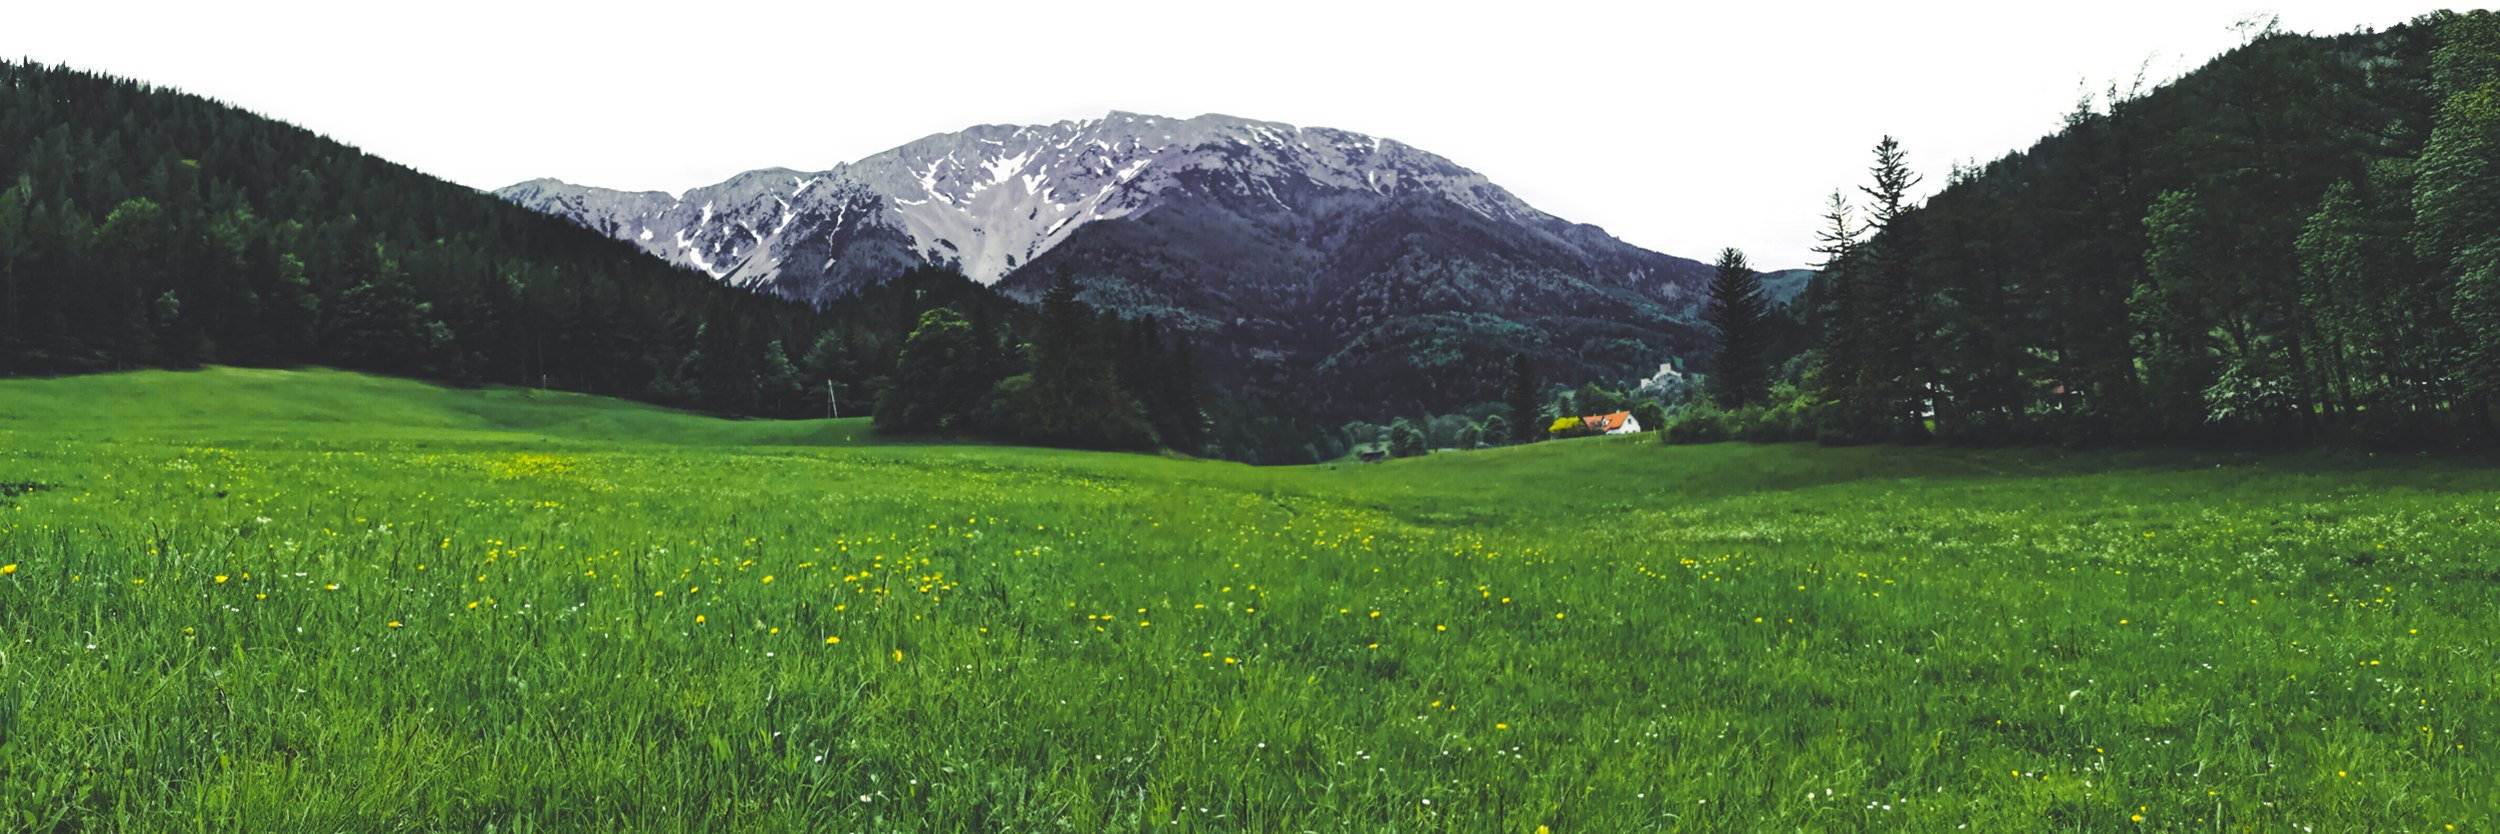 Puchberg am Schneeberg valley in Lower Austria